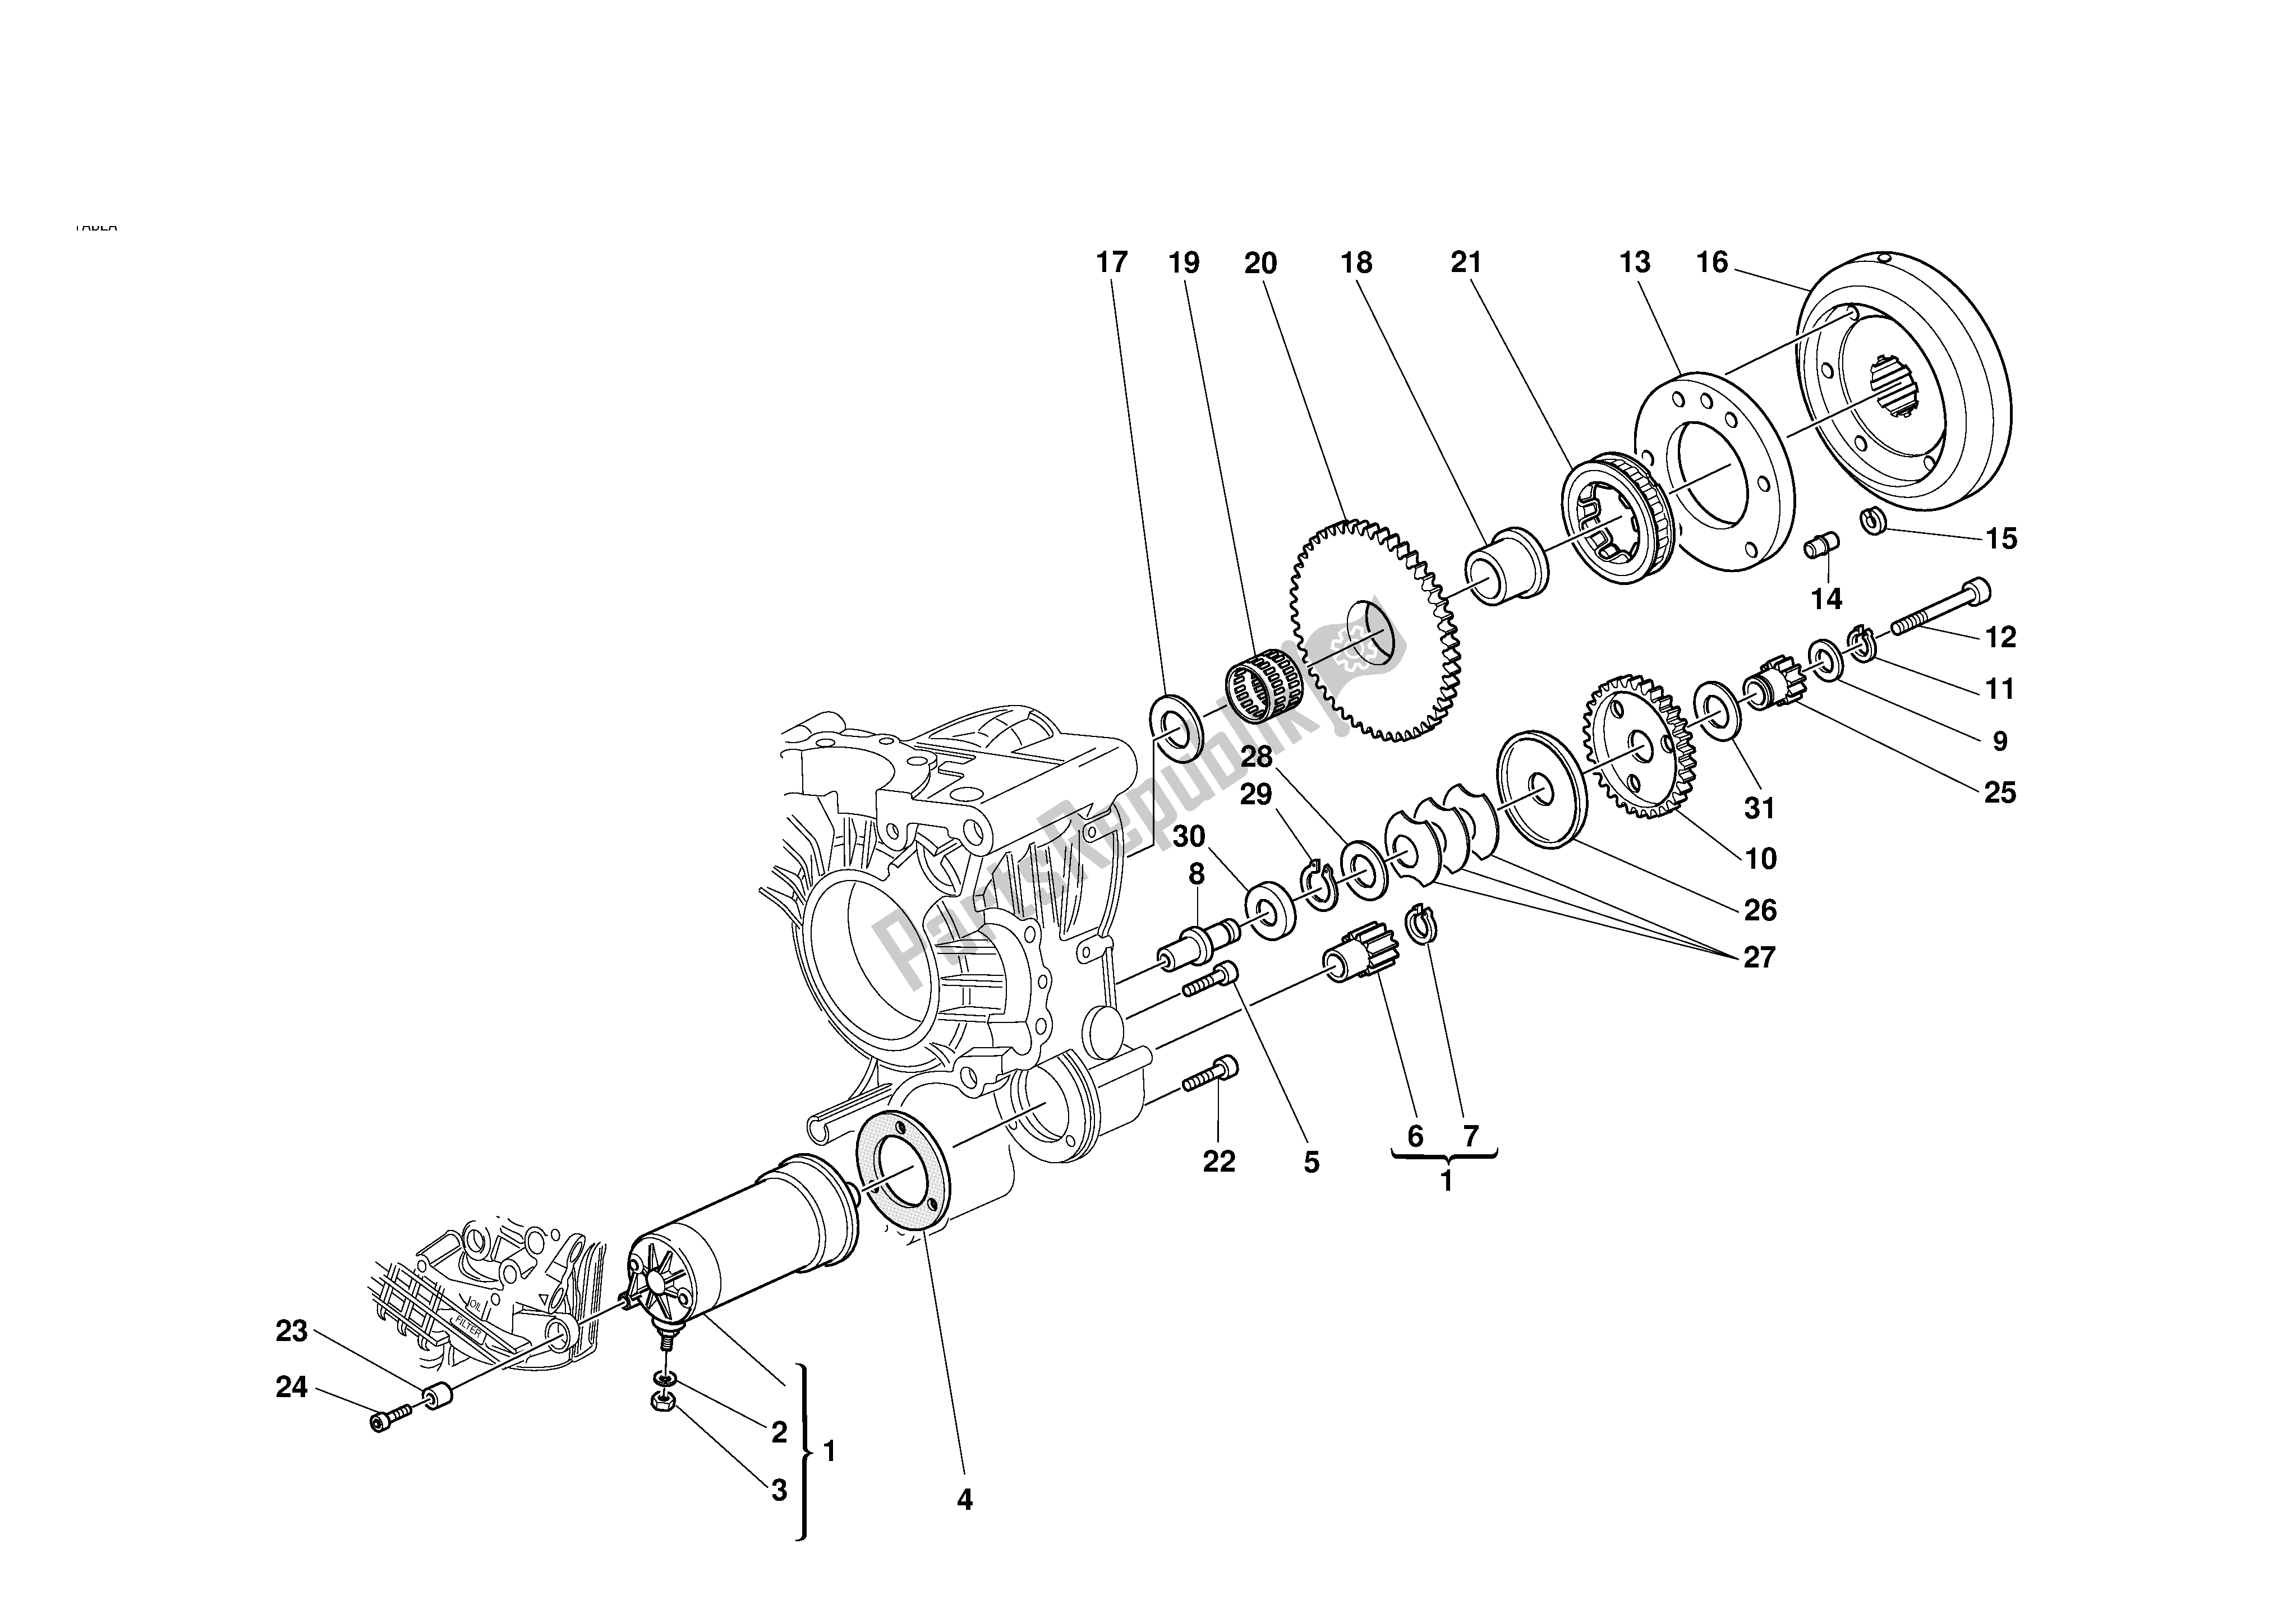 Alle onderdelen voor de Elektrische Starter Andignition van de Ducati 998R 2002